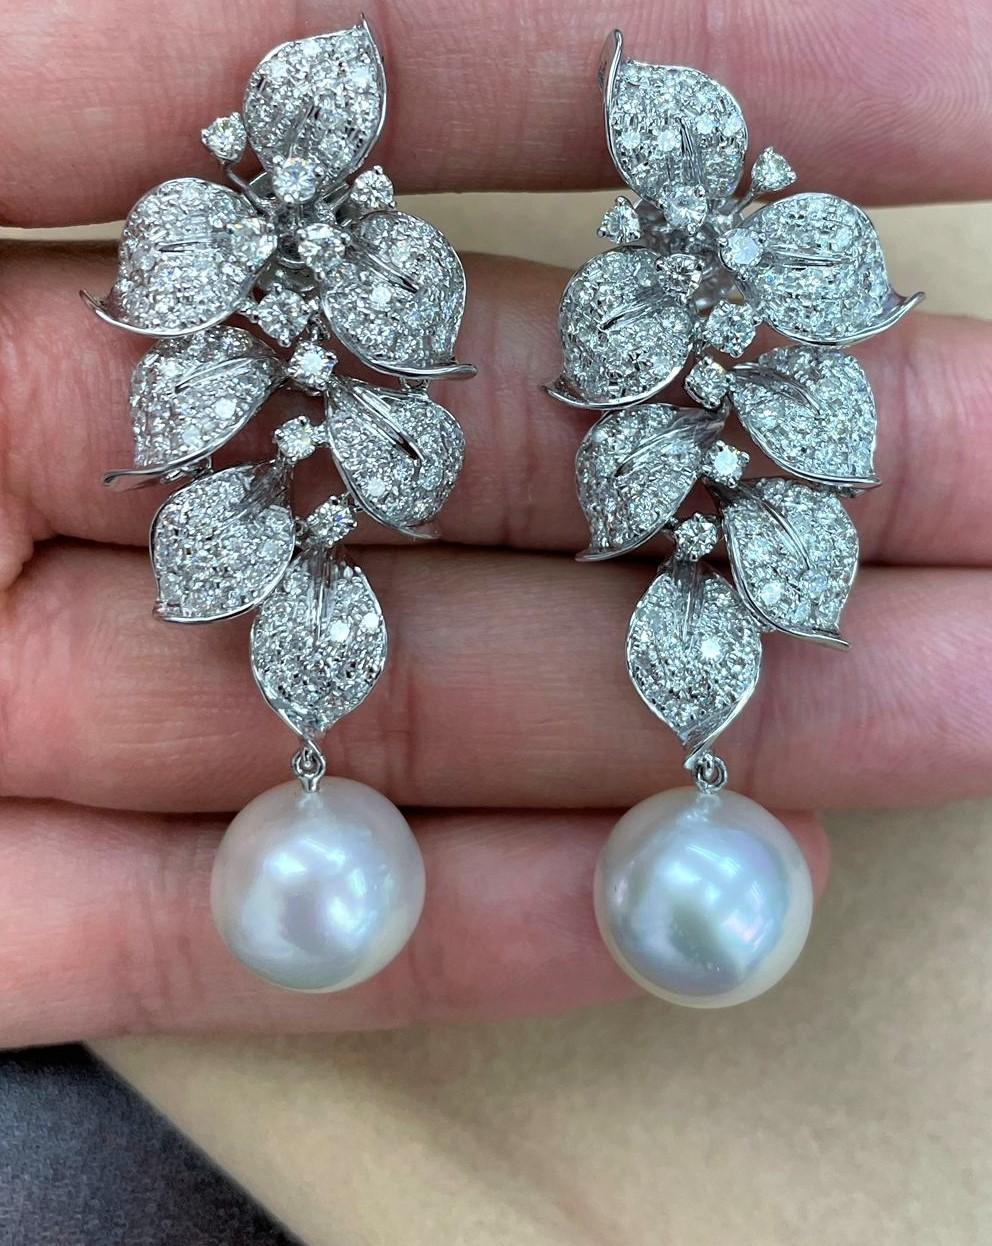 Die folgenden Artikel, die wir anbieten, sind diese extrem seltenen schönen 18KT Weißgold feinen großen Südsee-Perlen-Ohrringe mit ca. 4 Karat feinen glitzernden Fancy White Diamonds! Diese extrem seltenen, wunderschönen weißen Perlen sind